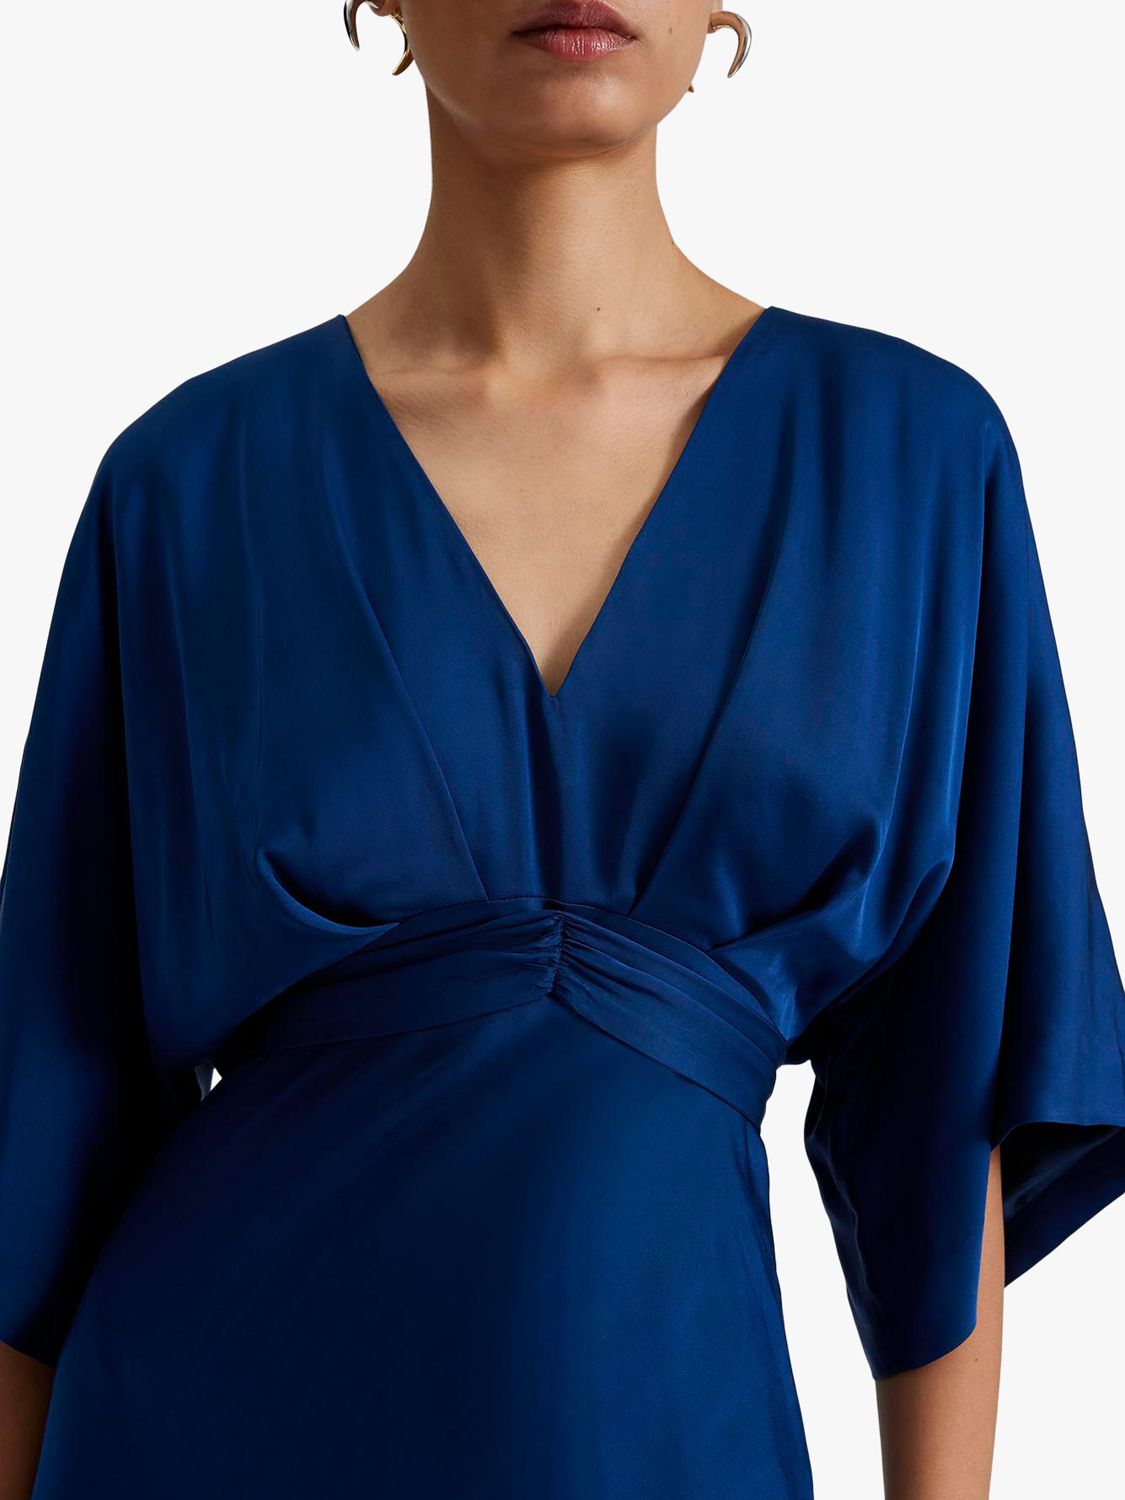 Malina Juno Satin Batwing Midi Dress, Midnight Blue, S